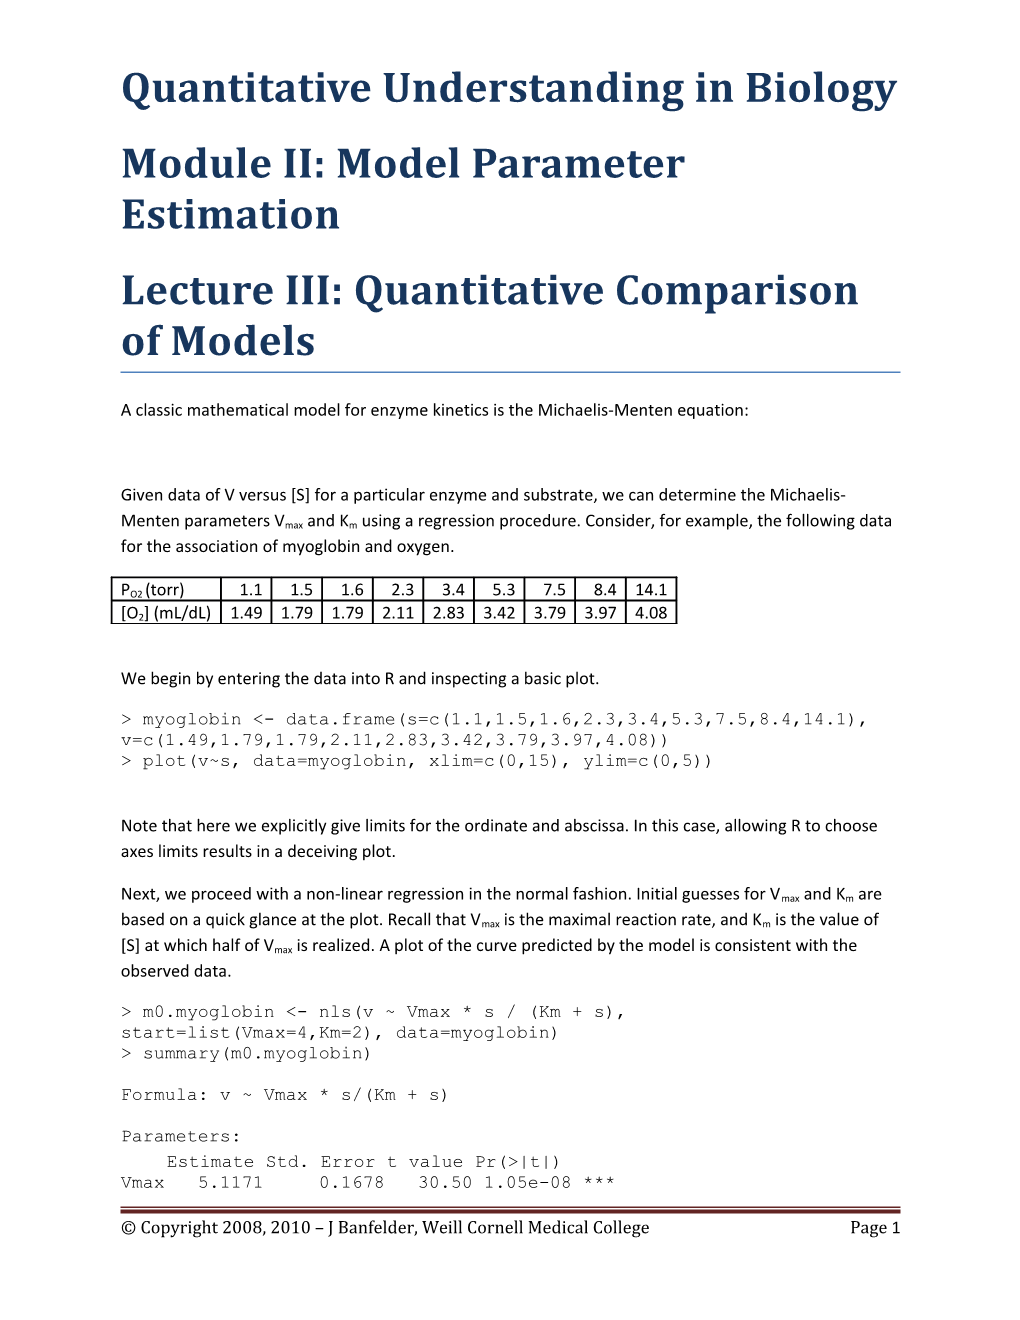 Quantitative Comparison of Models